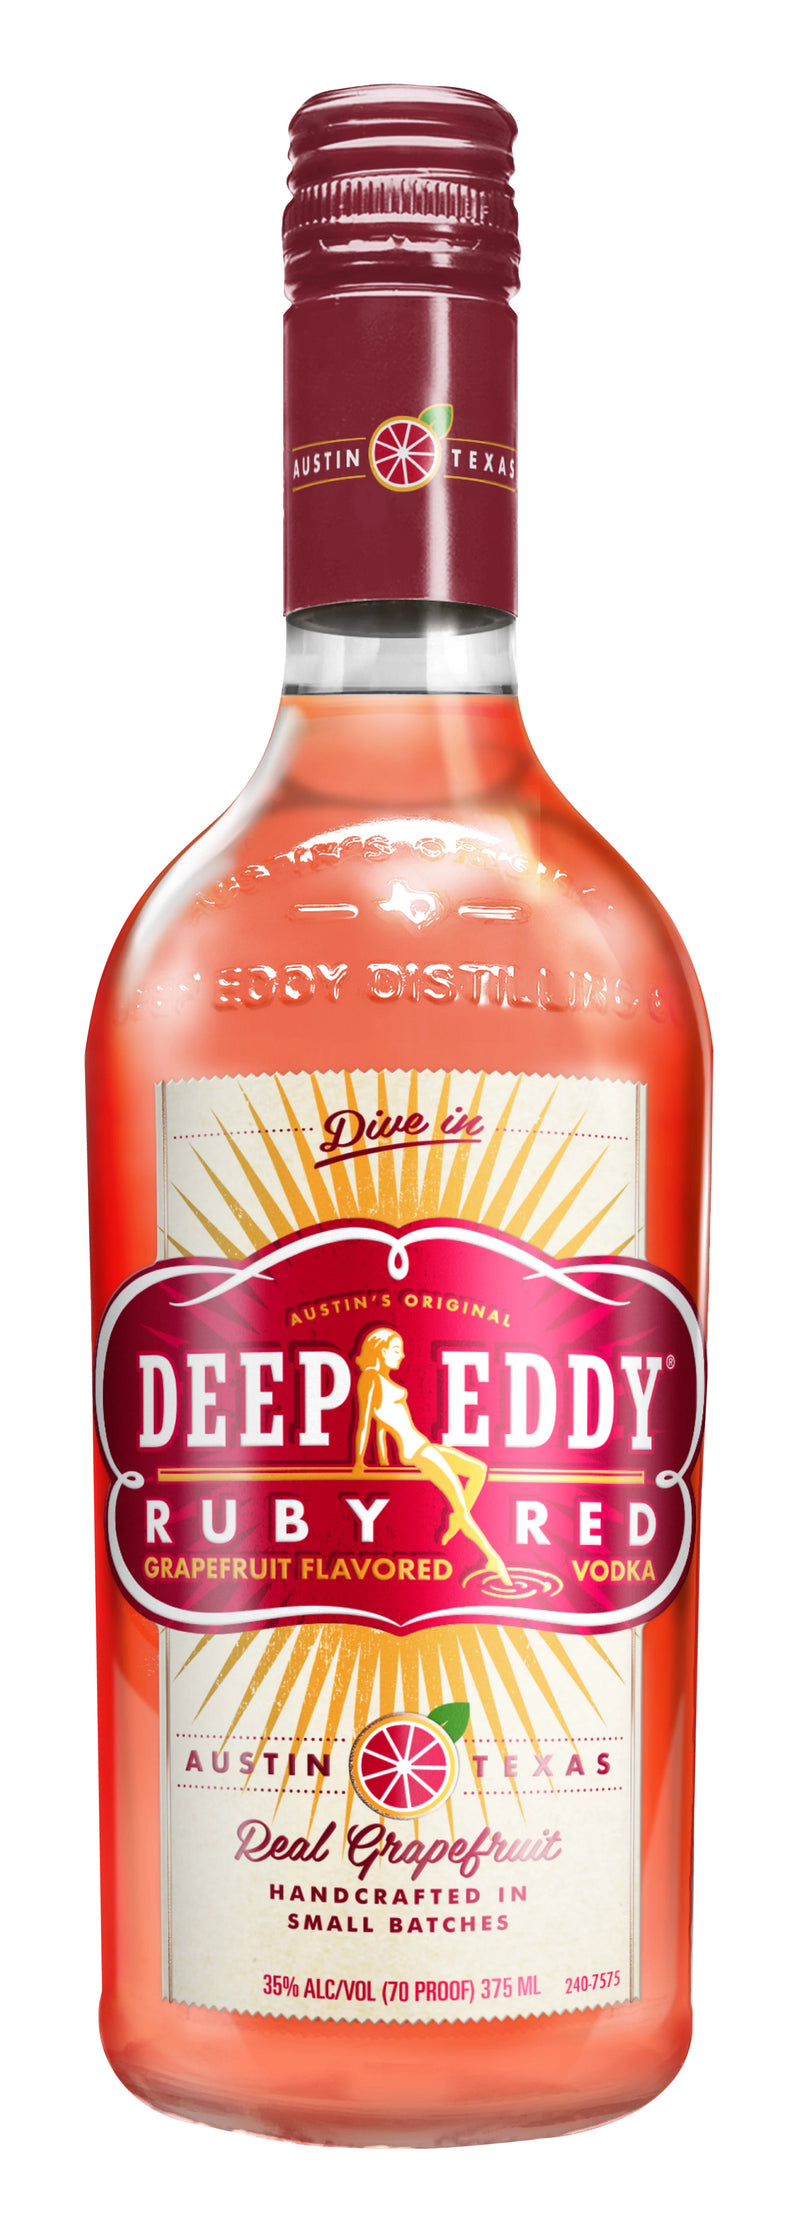 DEEP EDDY RUBY RED 375ML